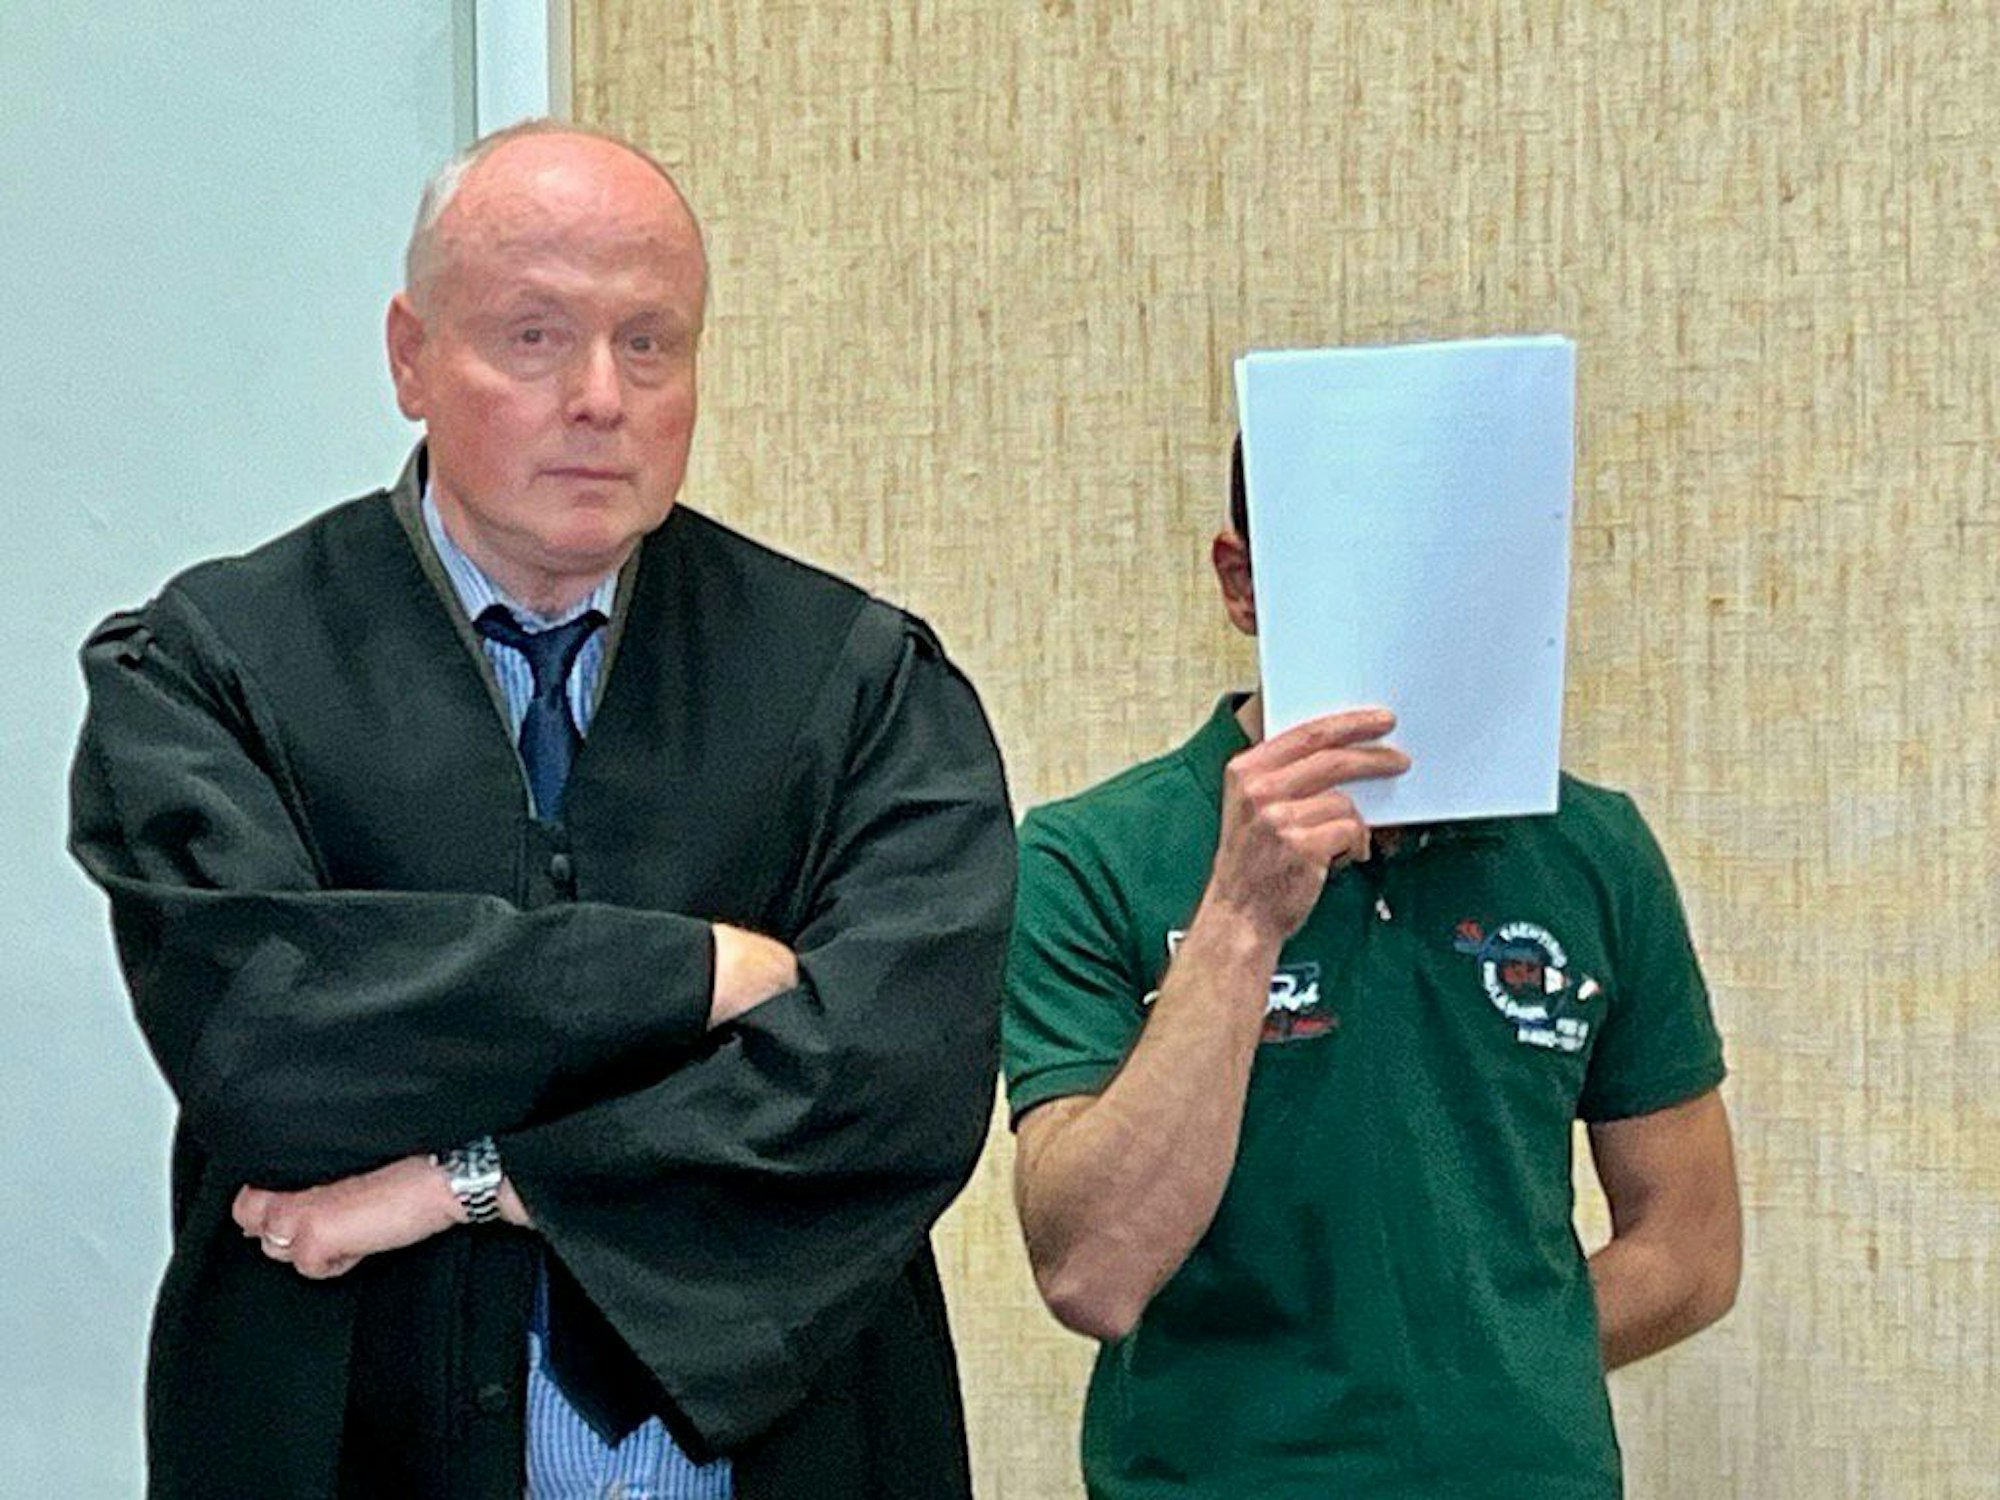 Der Beschuldigte verdeckt sein Gesicht vor den Kameras im Gerichtssaal mit einem Schreibblock.